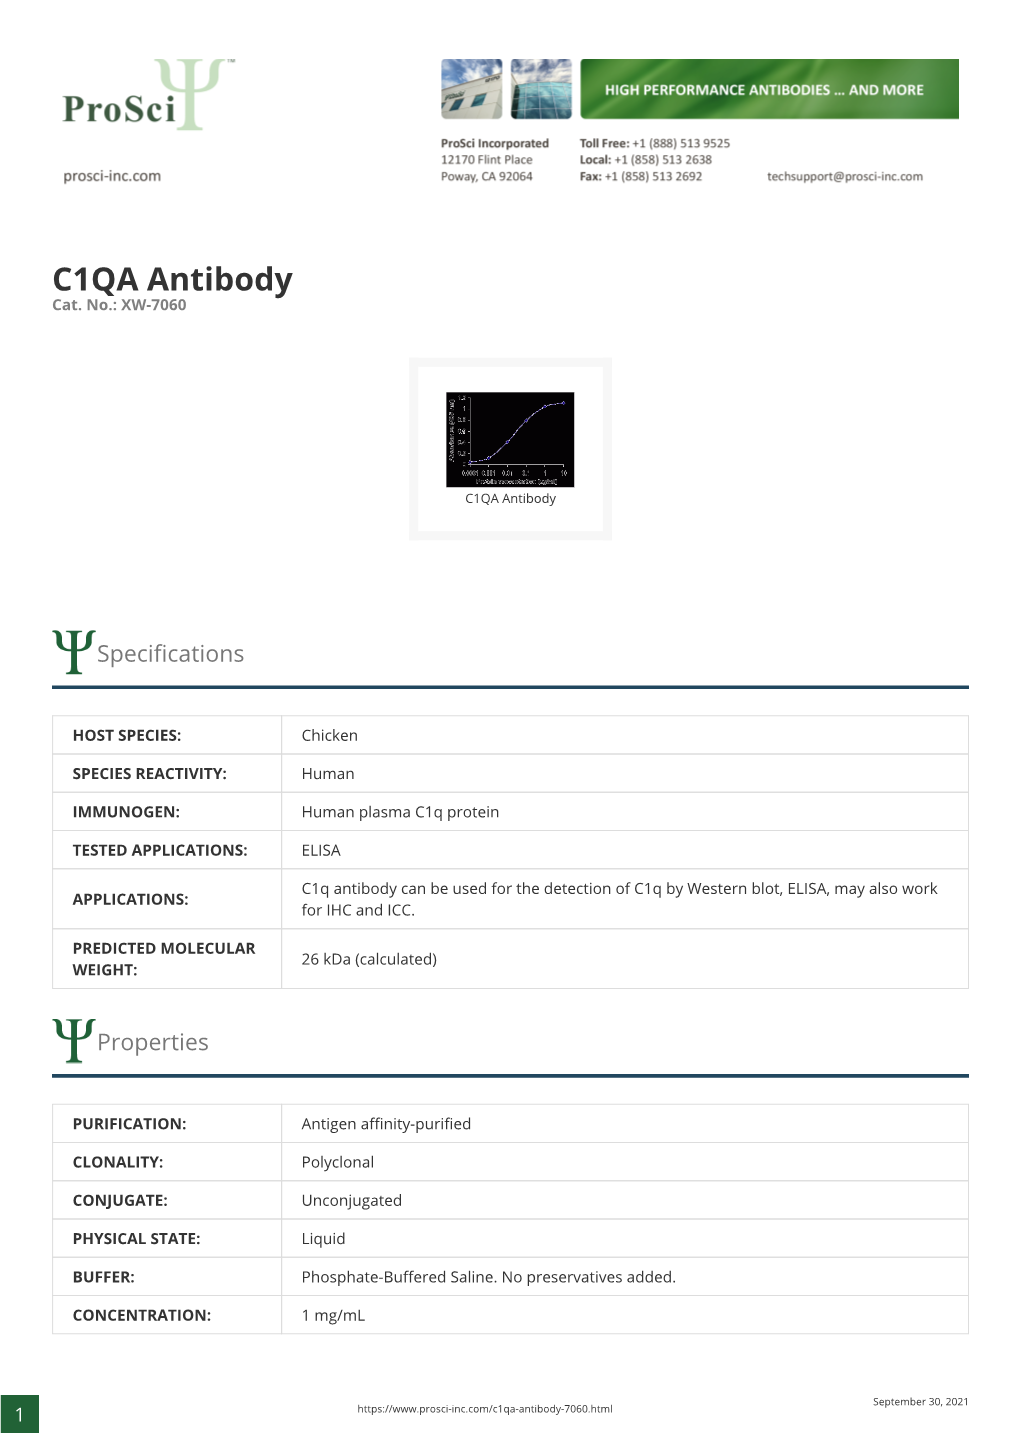 C1QA Antibody Cat